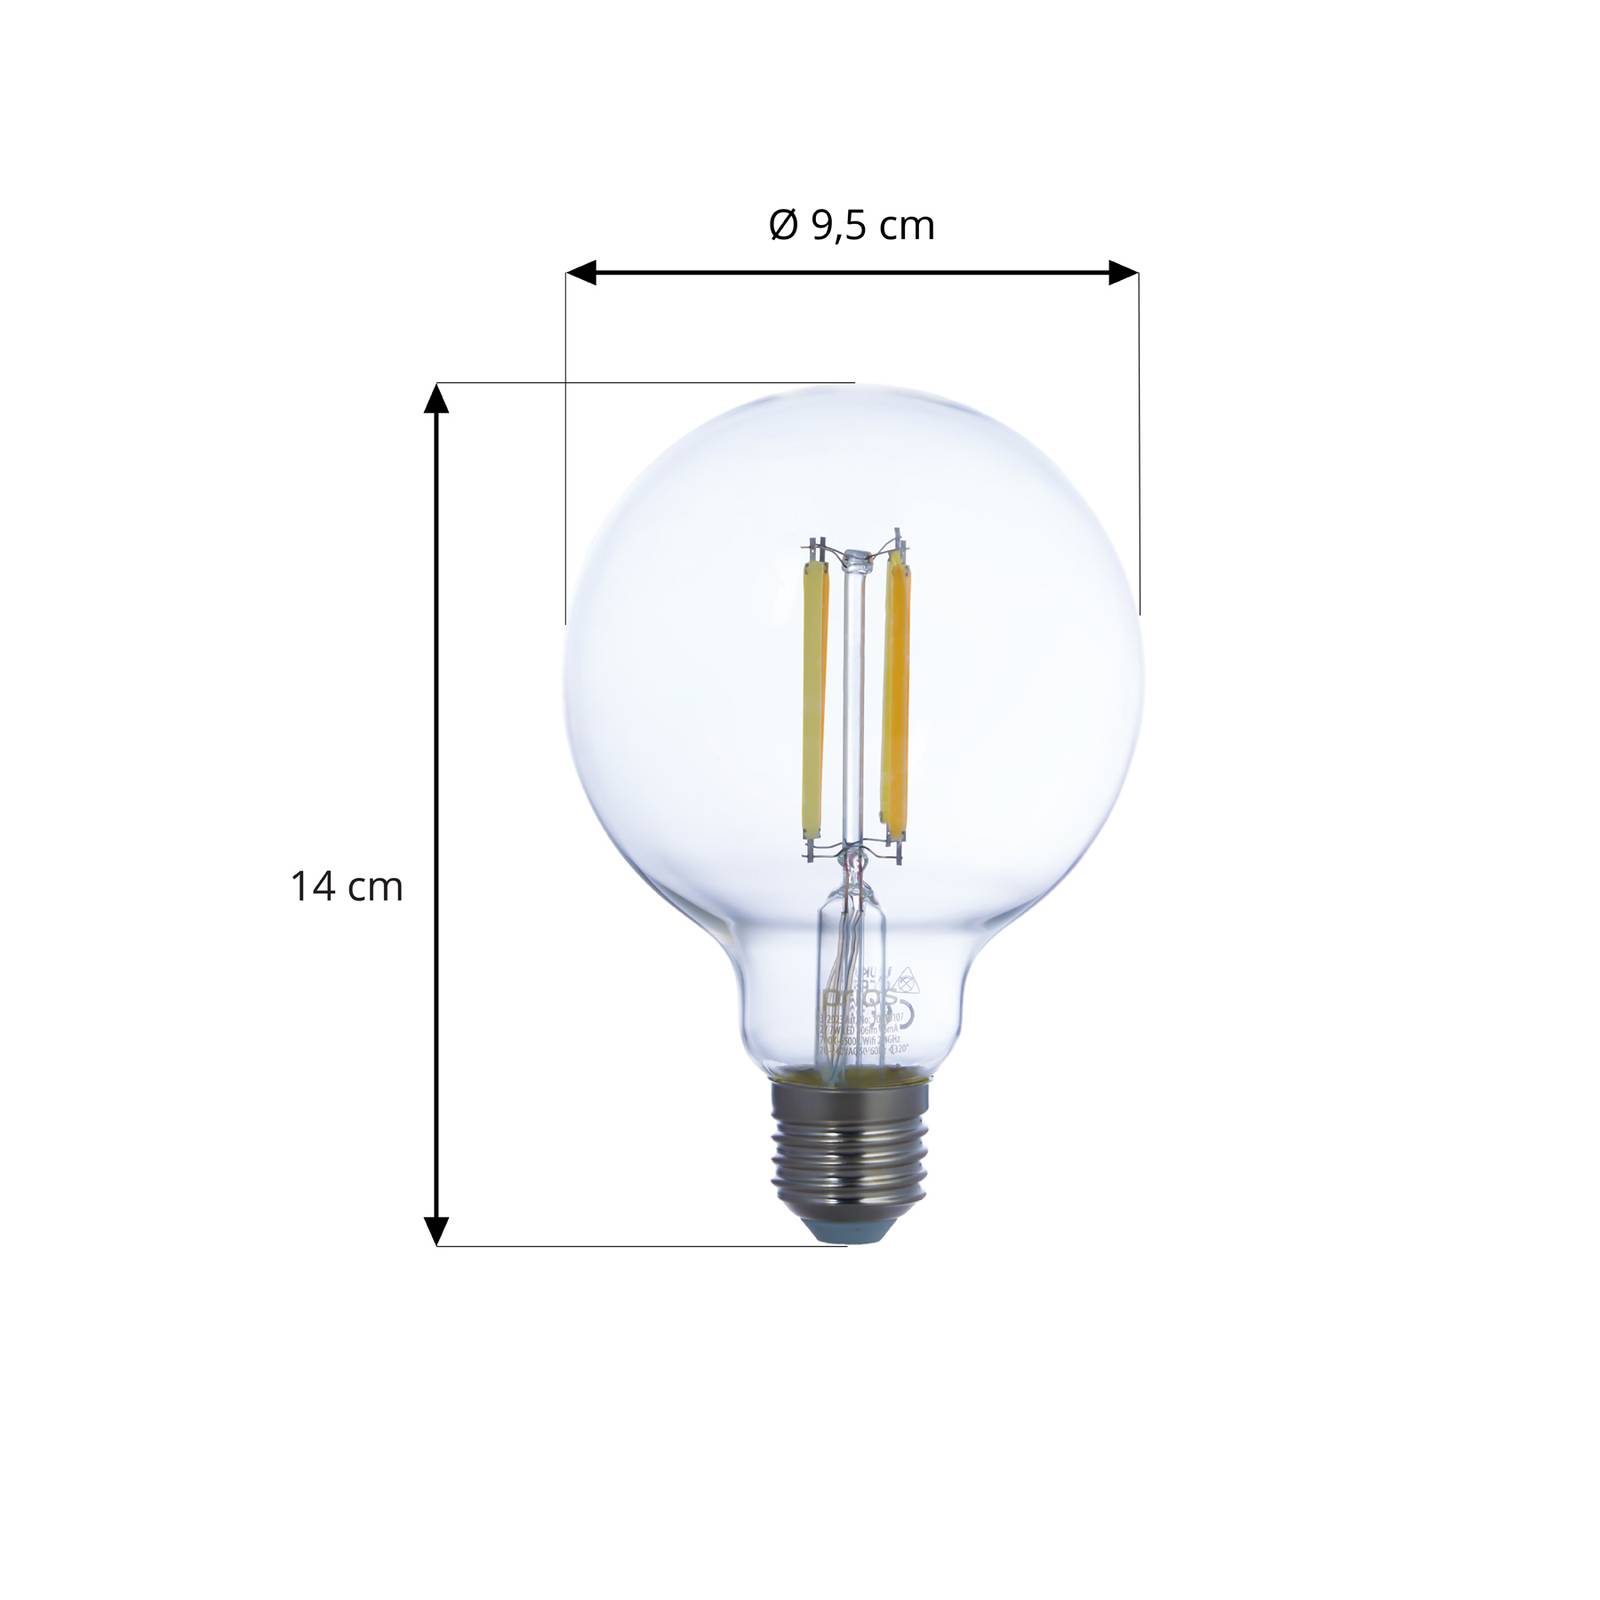 PRIOS Smart LED E27 G95 7W WLAN tunable white